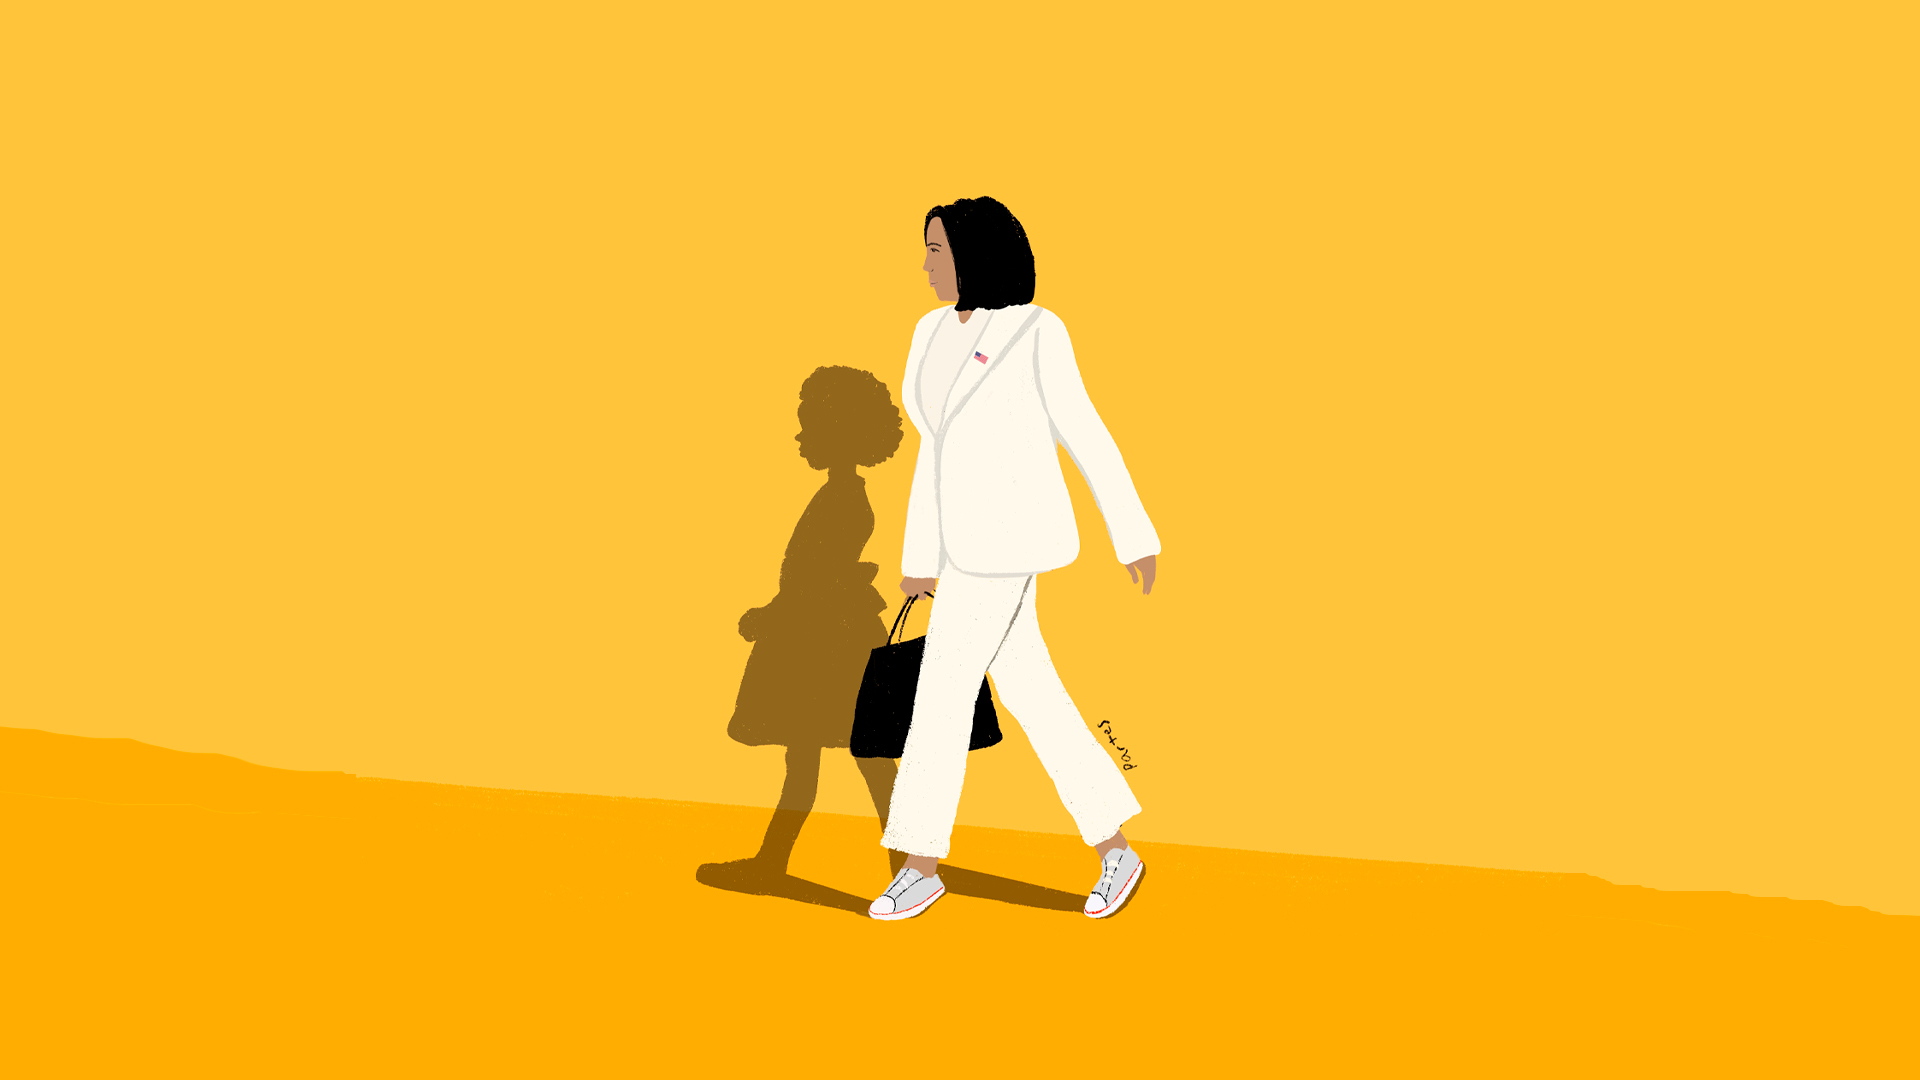 Ilustração de Kamala Harris: em um fundo amarelo, Kamala está vestindo terno e calça branca, assim como tênis branco, e segurando uma bolsa preta. Sua sombra é projetada ao fundo, mas no formato de uma silhueta de uma menina de vestido e cabelos crespos.